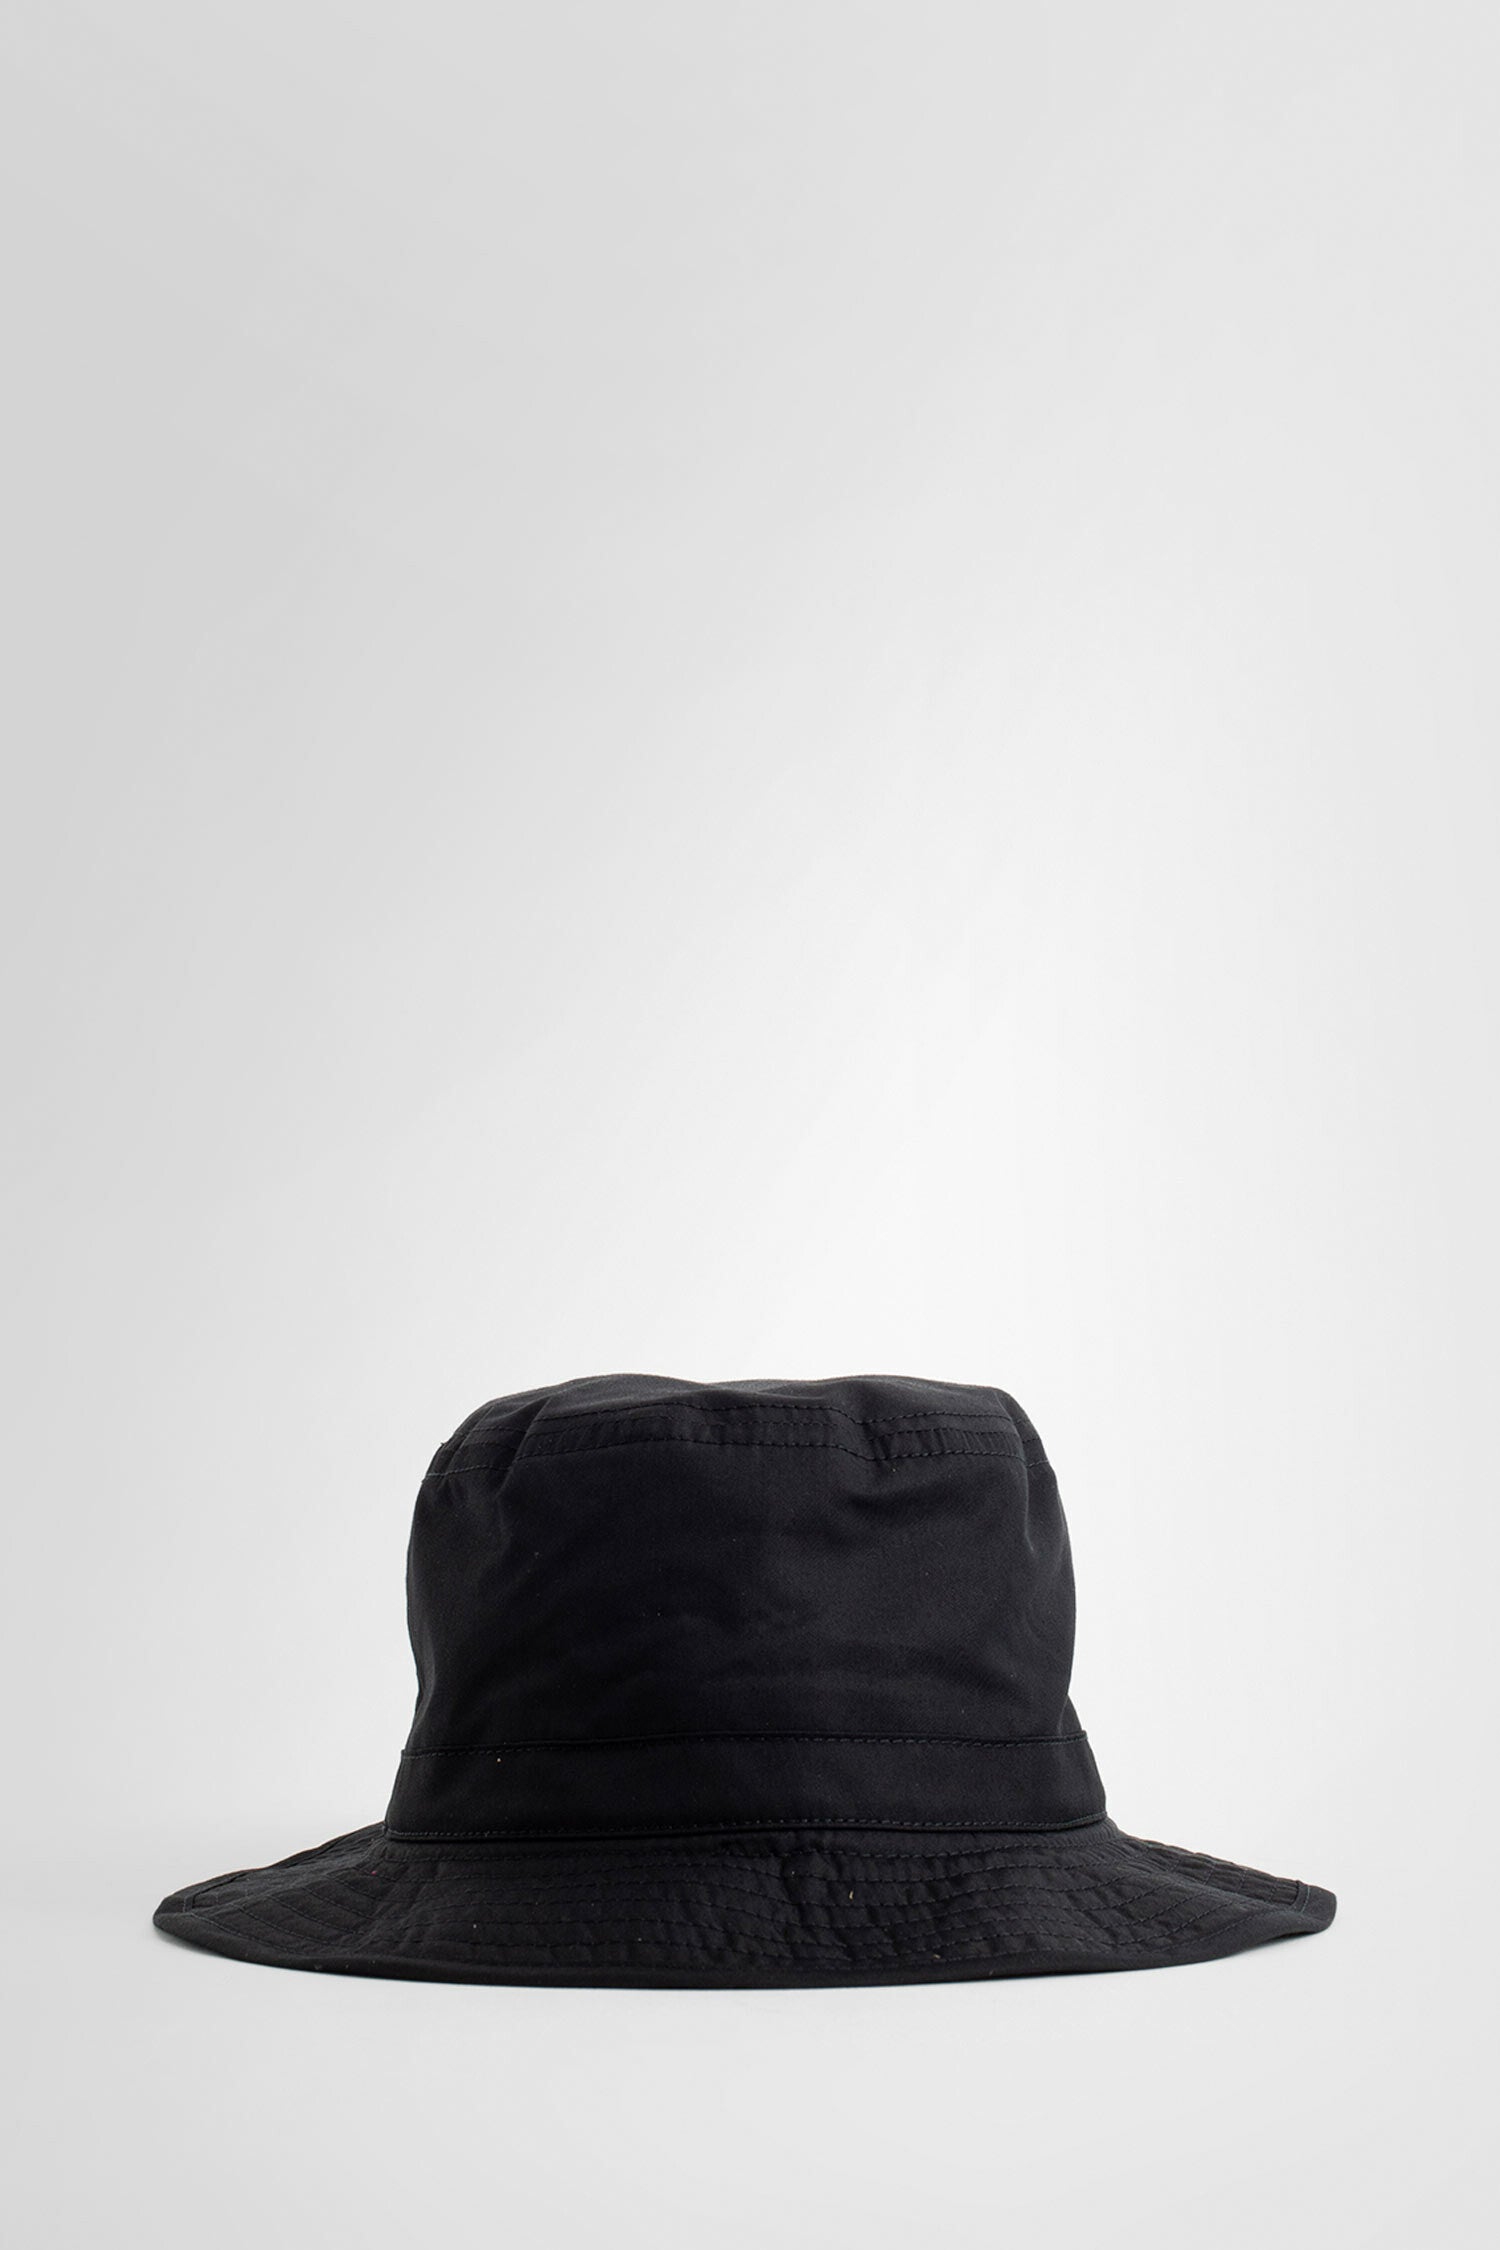 Lemaire Woman Black Hats